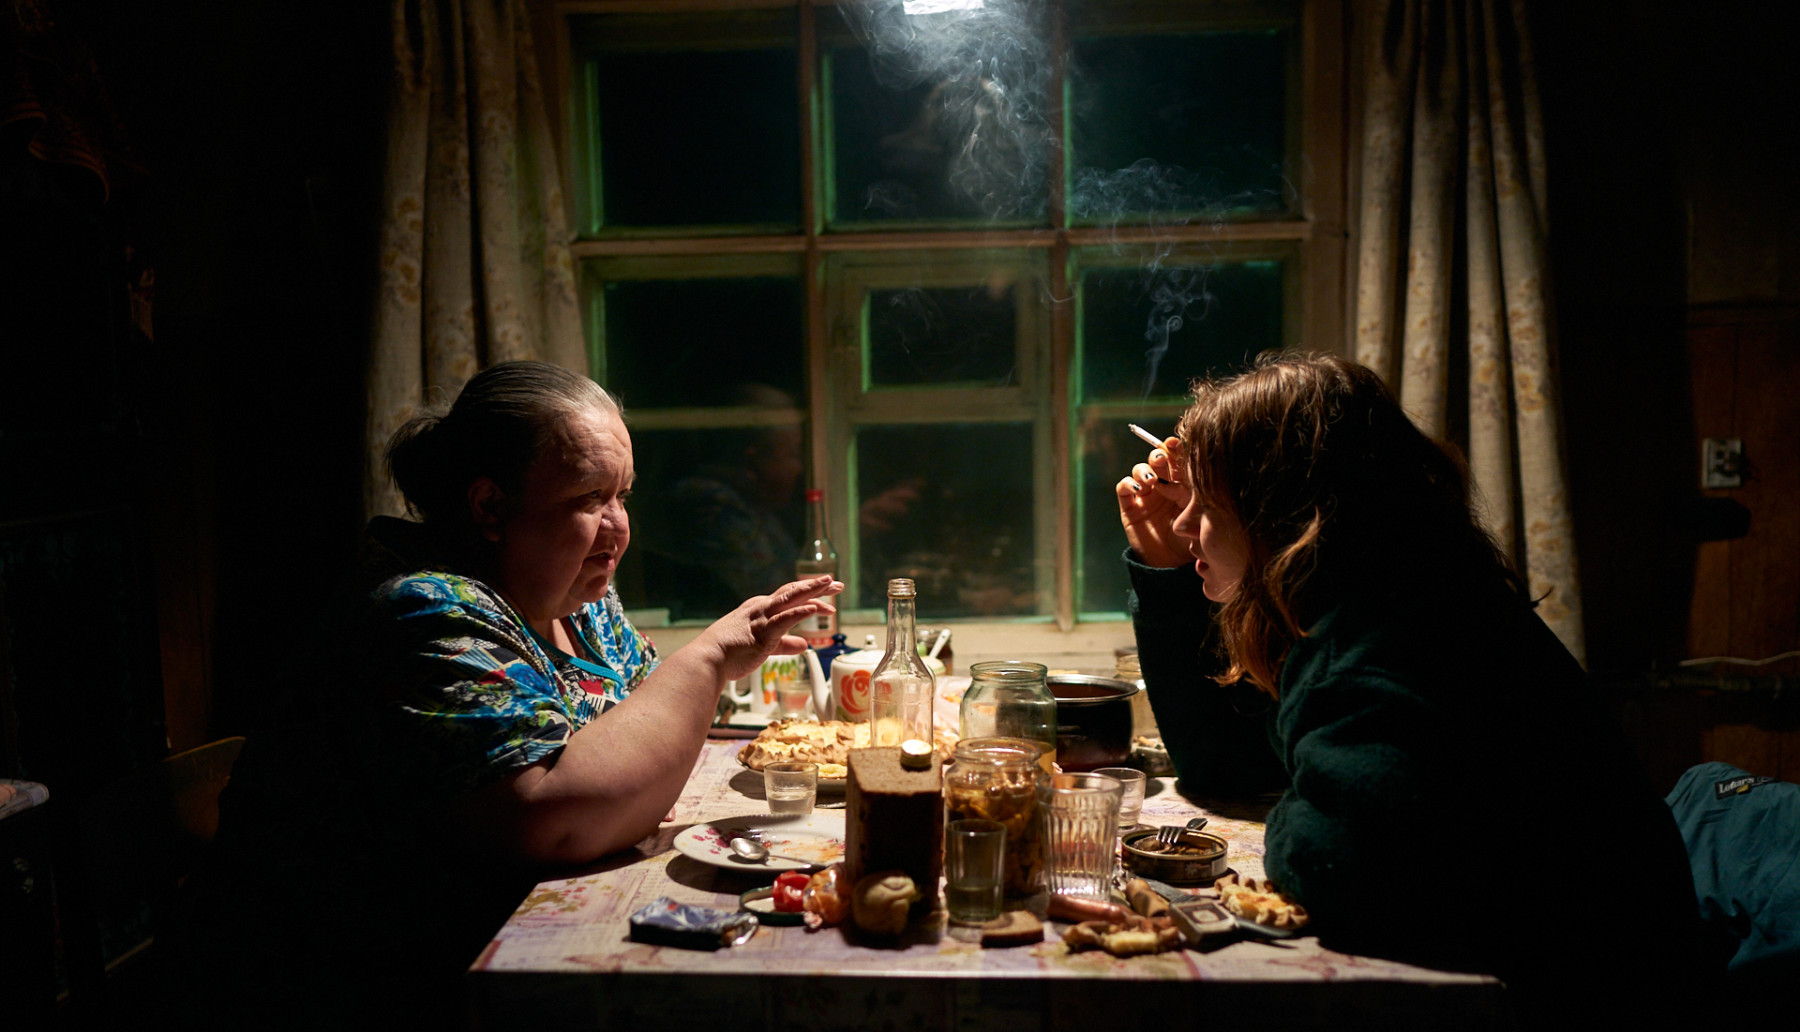 Dos mujeres, una mayor y la otra joven, sentadas a la mesa en una cocina, bebiendo, fumando y charlando.